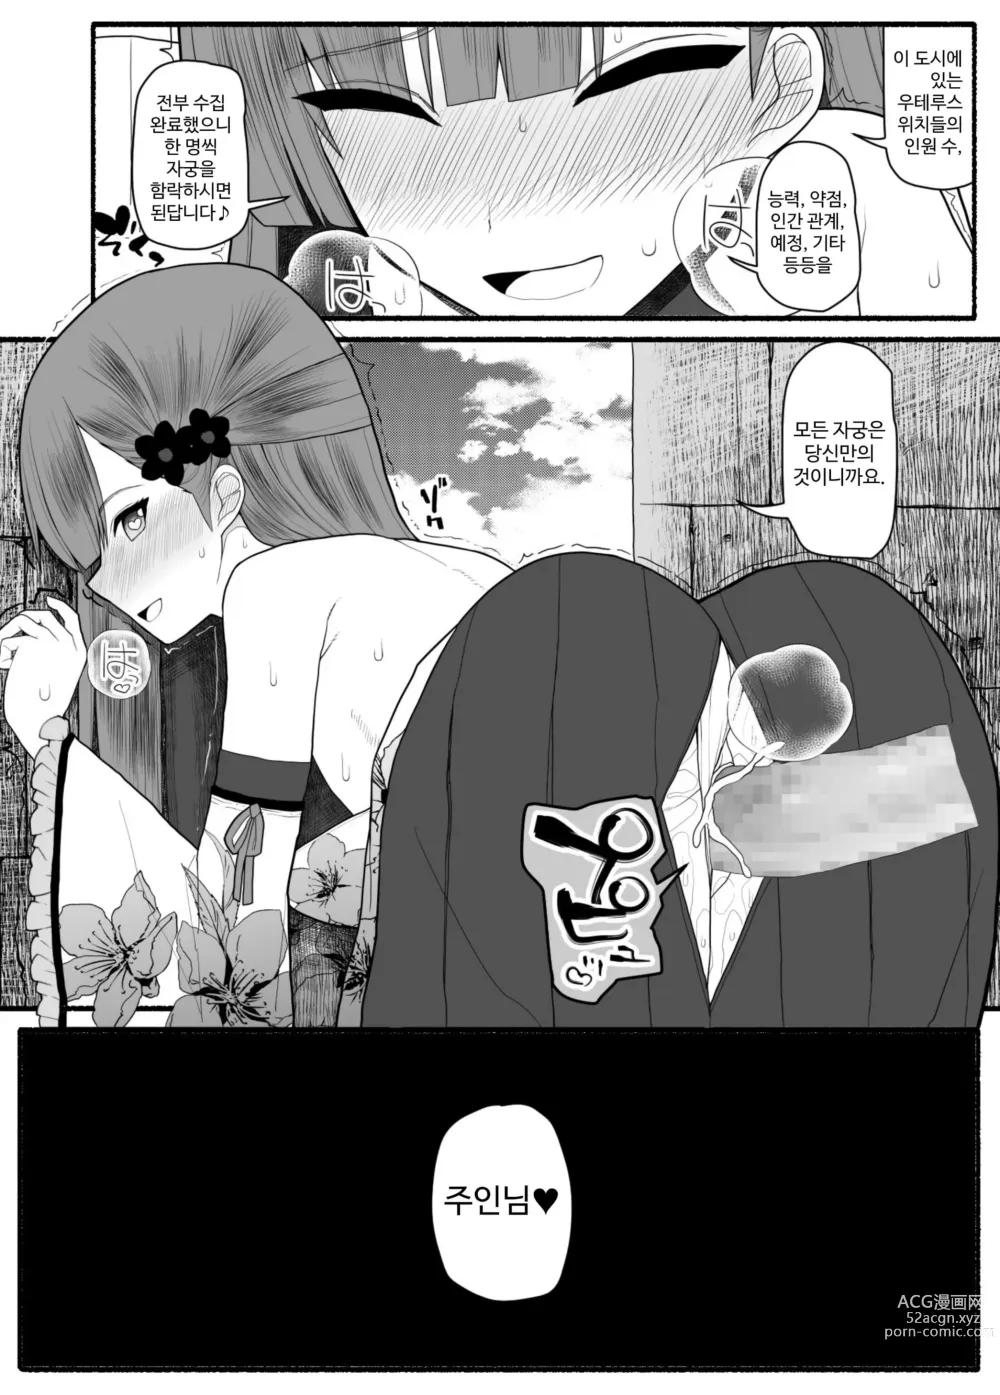 Page 51 of doujinshi Shikyuu Majo VS Joukyuu Majin